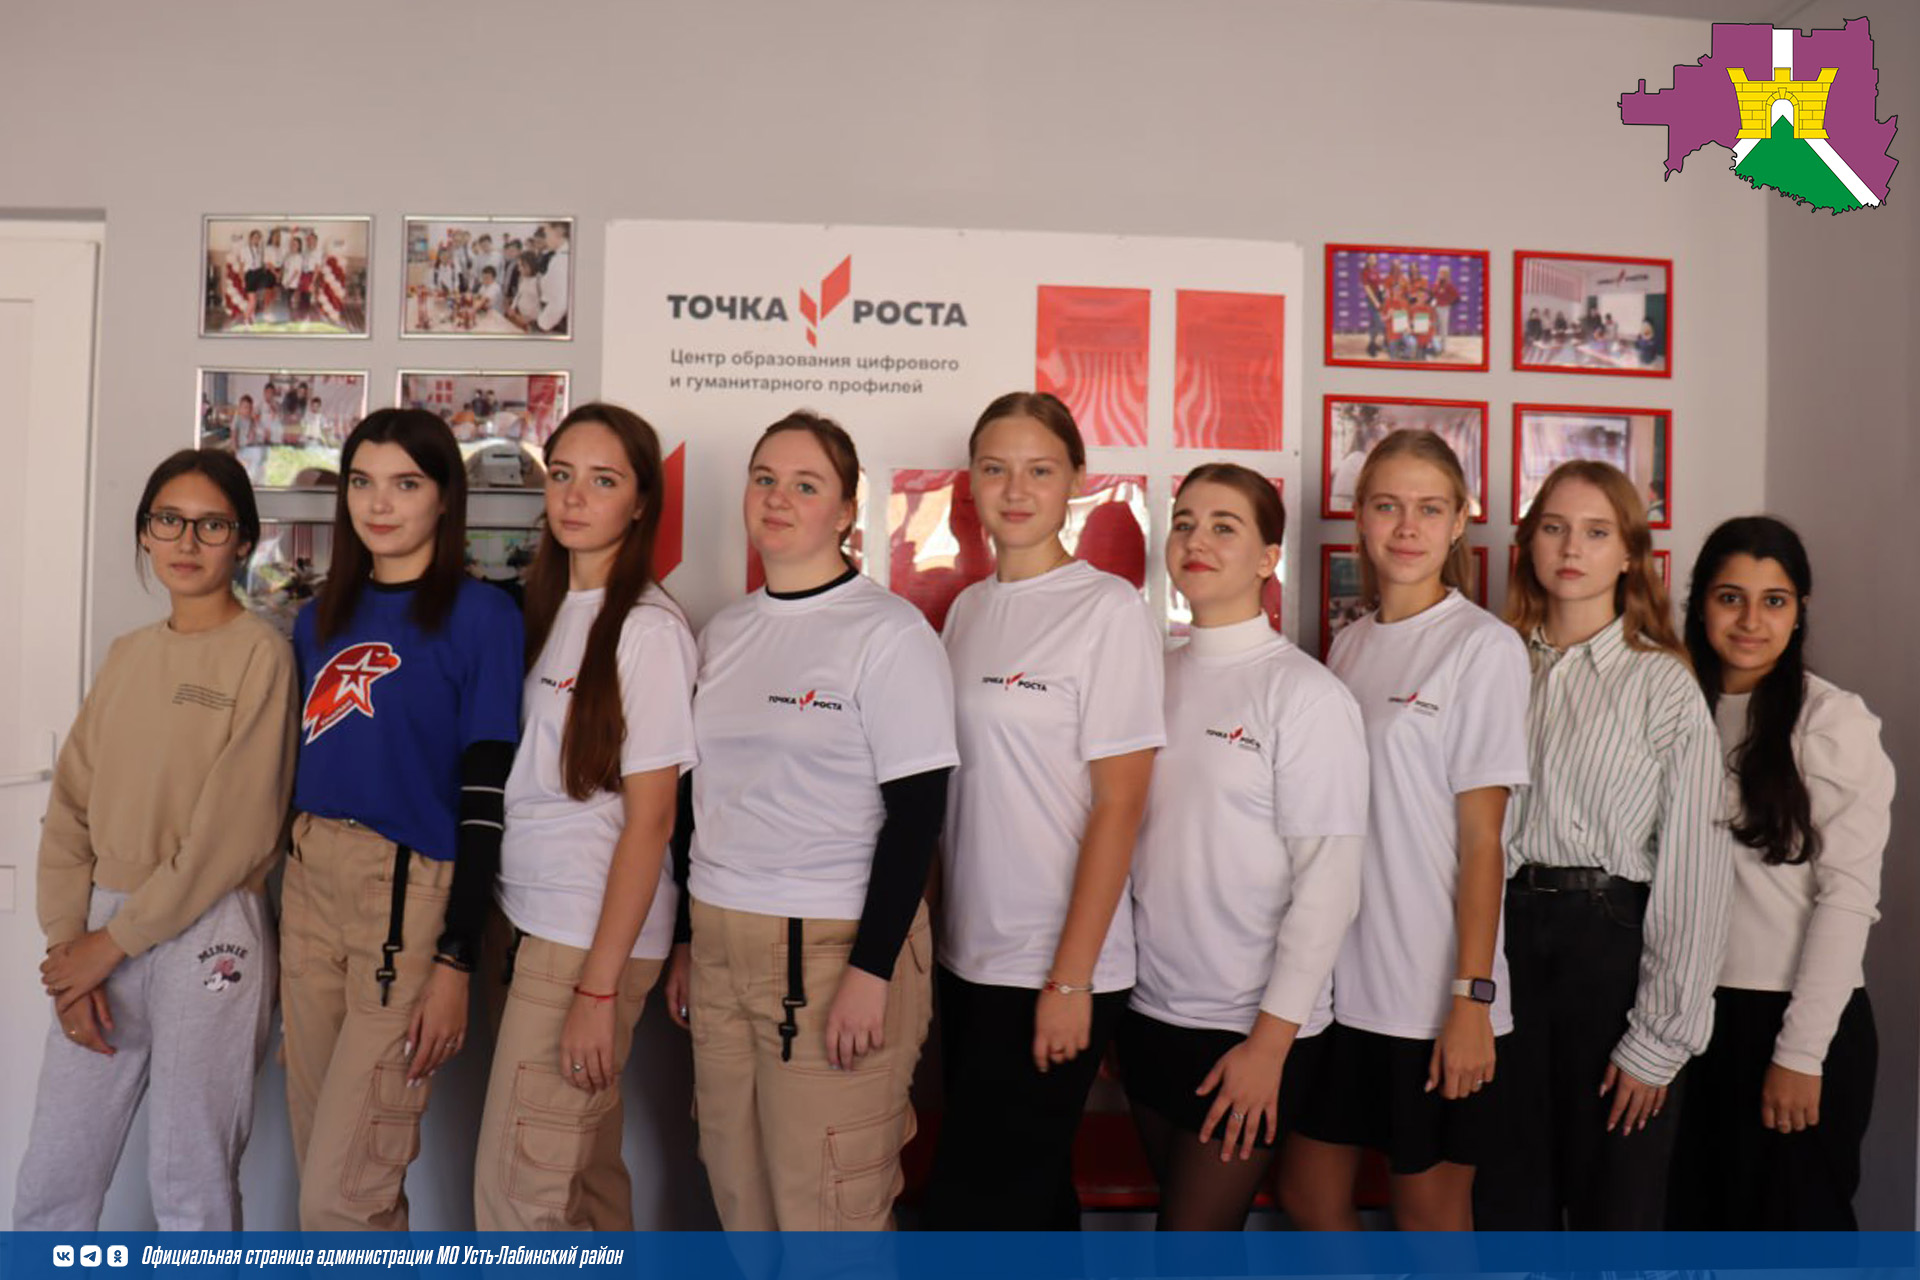 Ученики школы №7 стала финалистом Национальной премии "Россия - мои горизонты" в номинации "Лучший информационный ресурс" за создание школьного медиацентра.